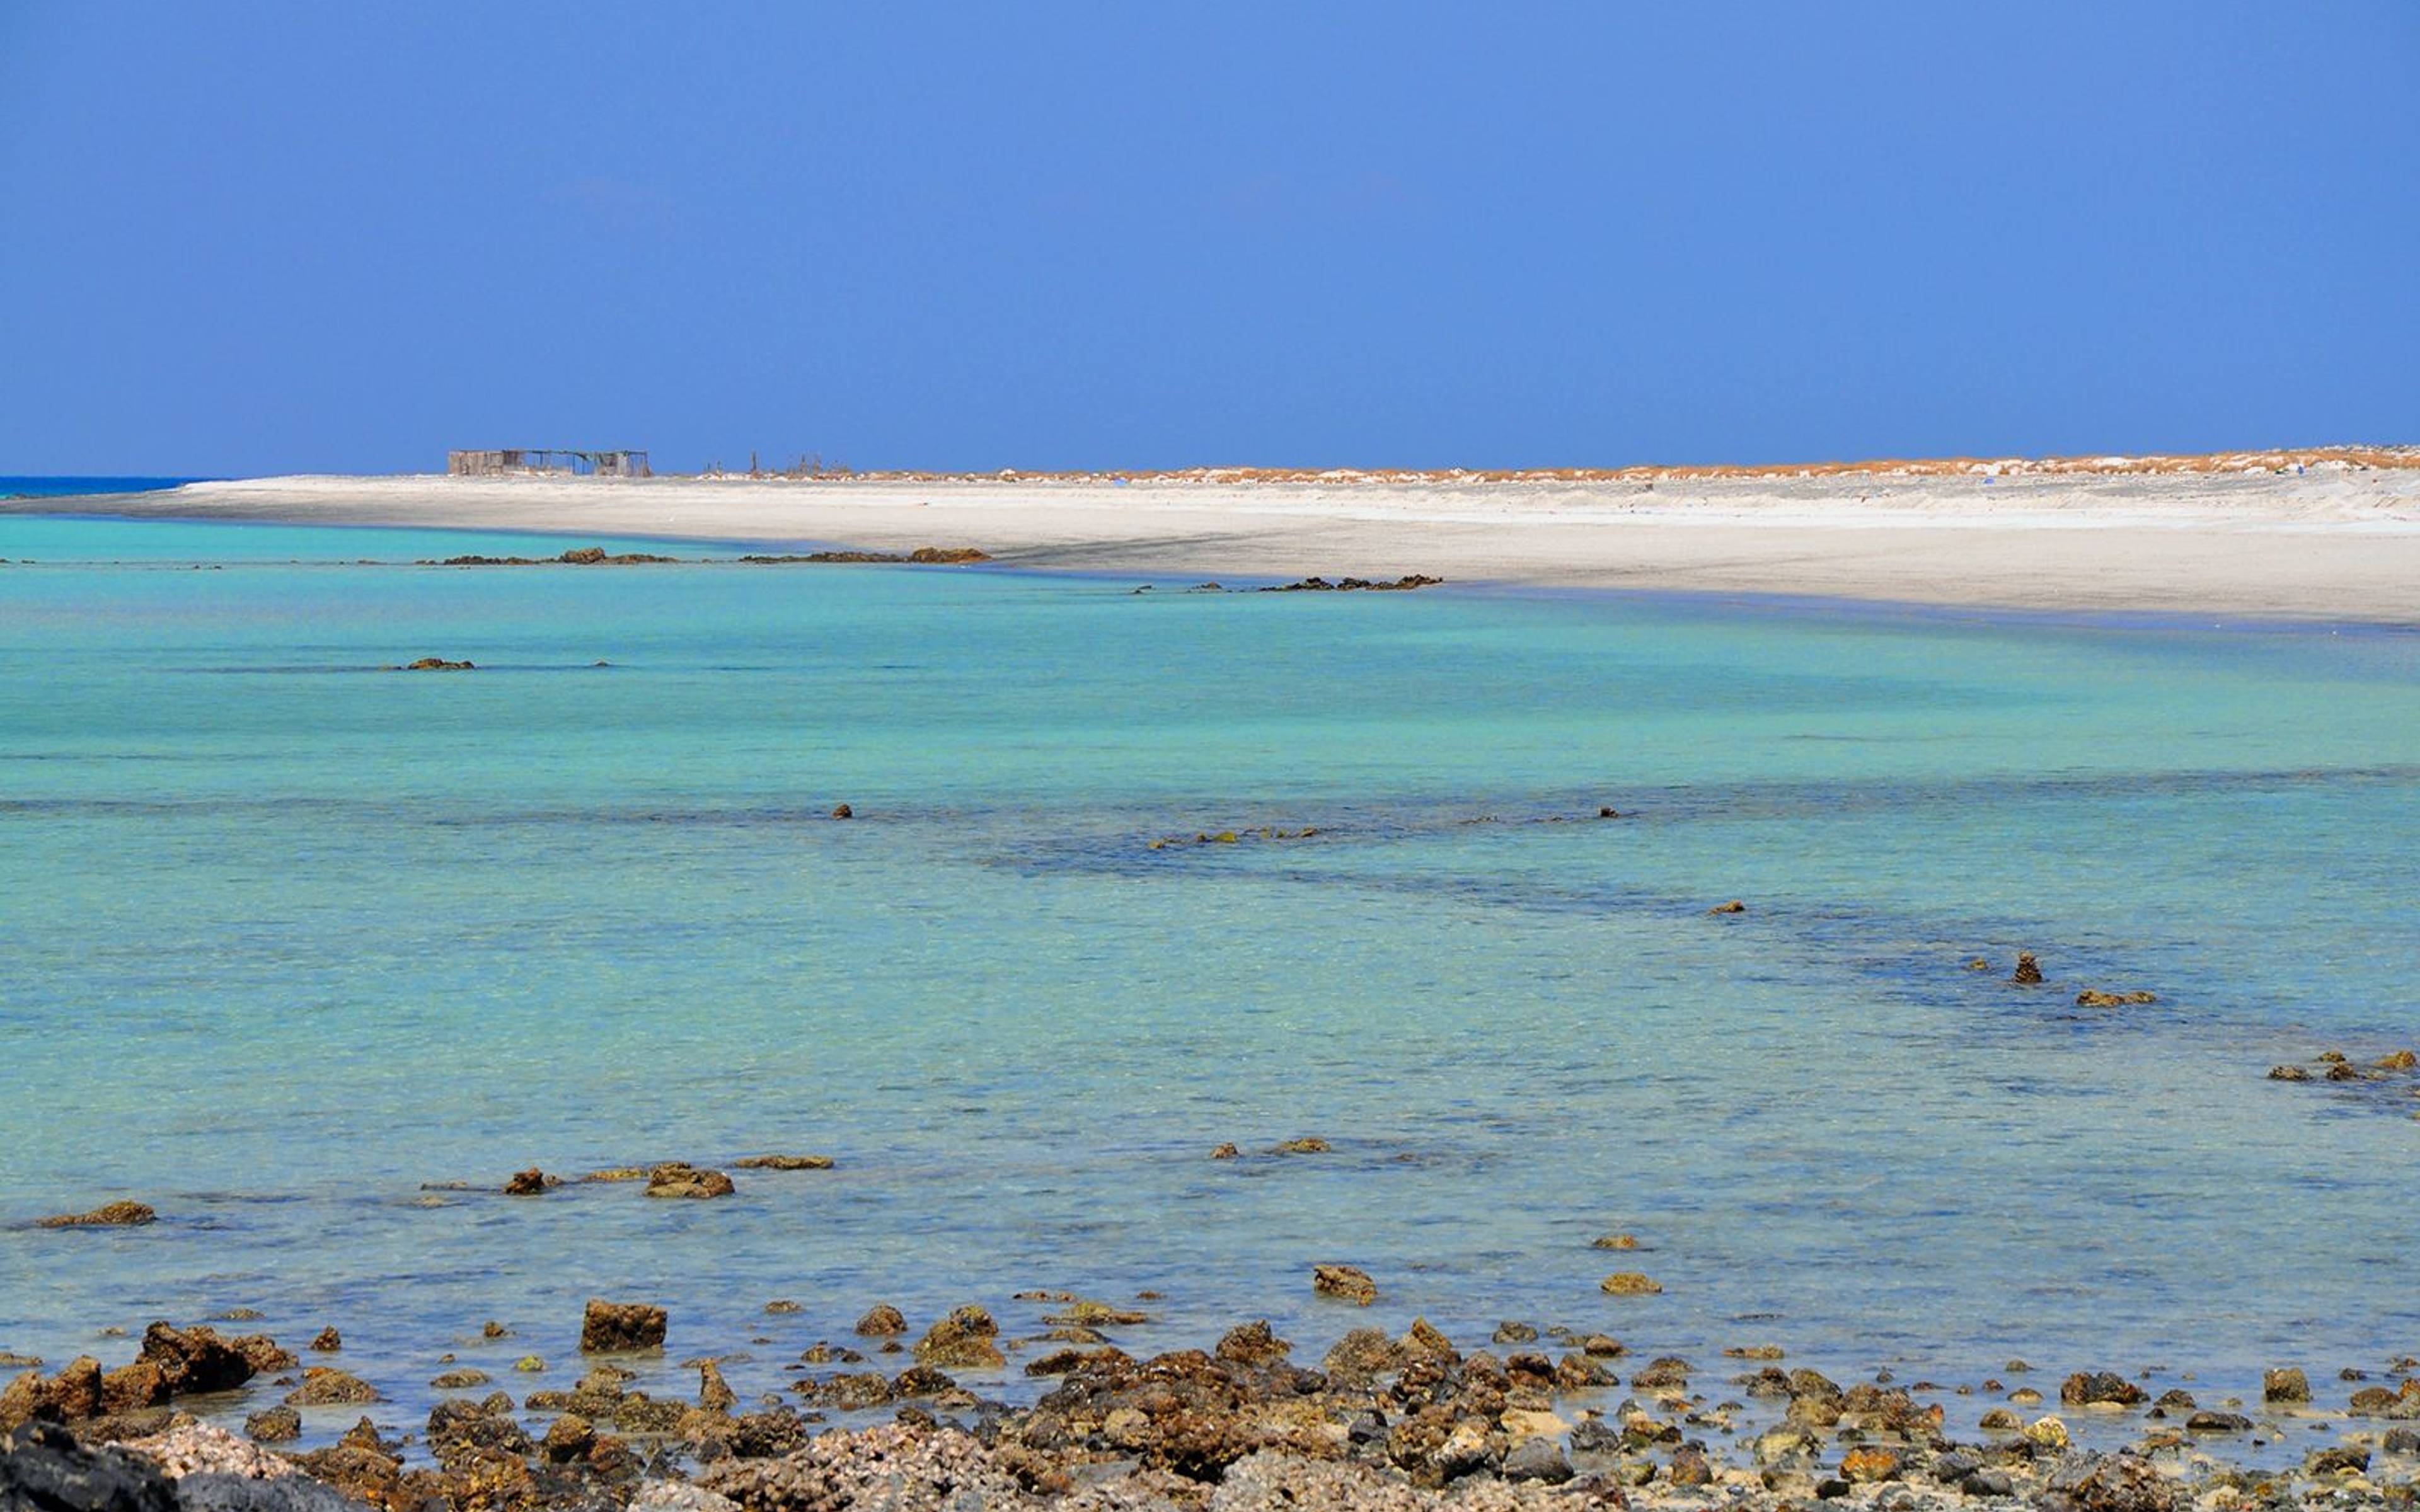 Le spiagge selvagge dell'isola di Masirah